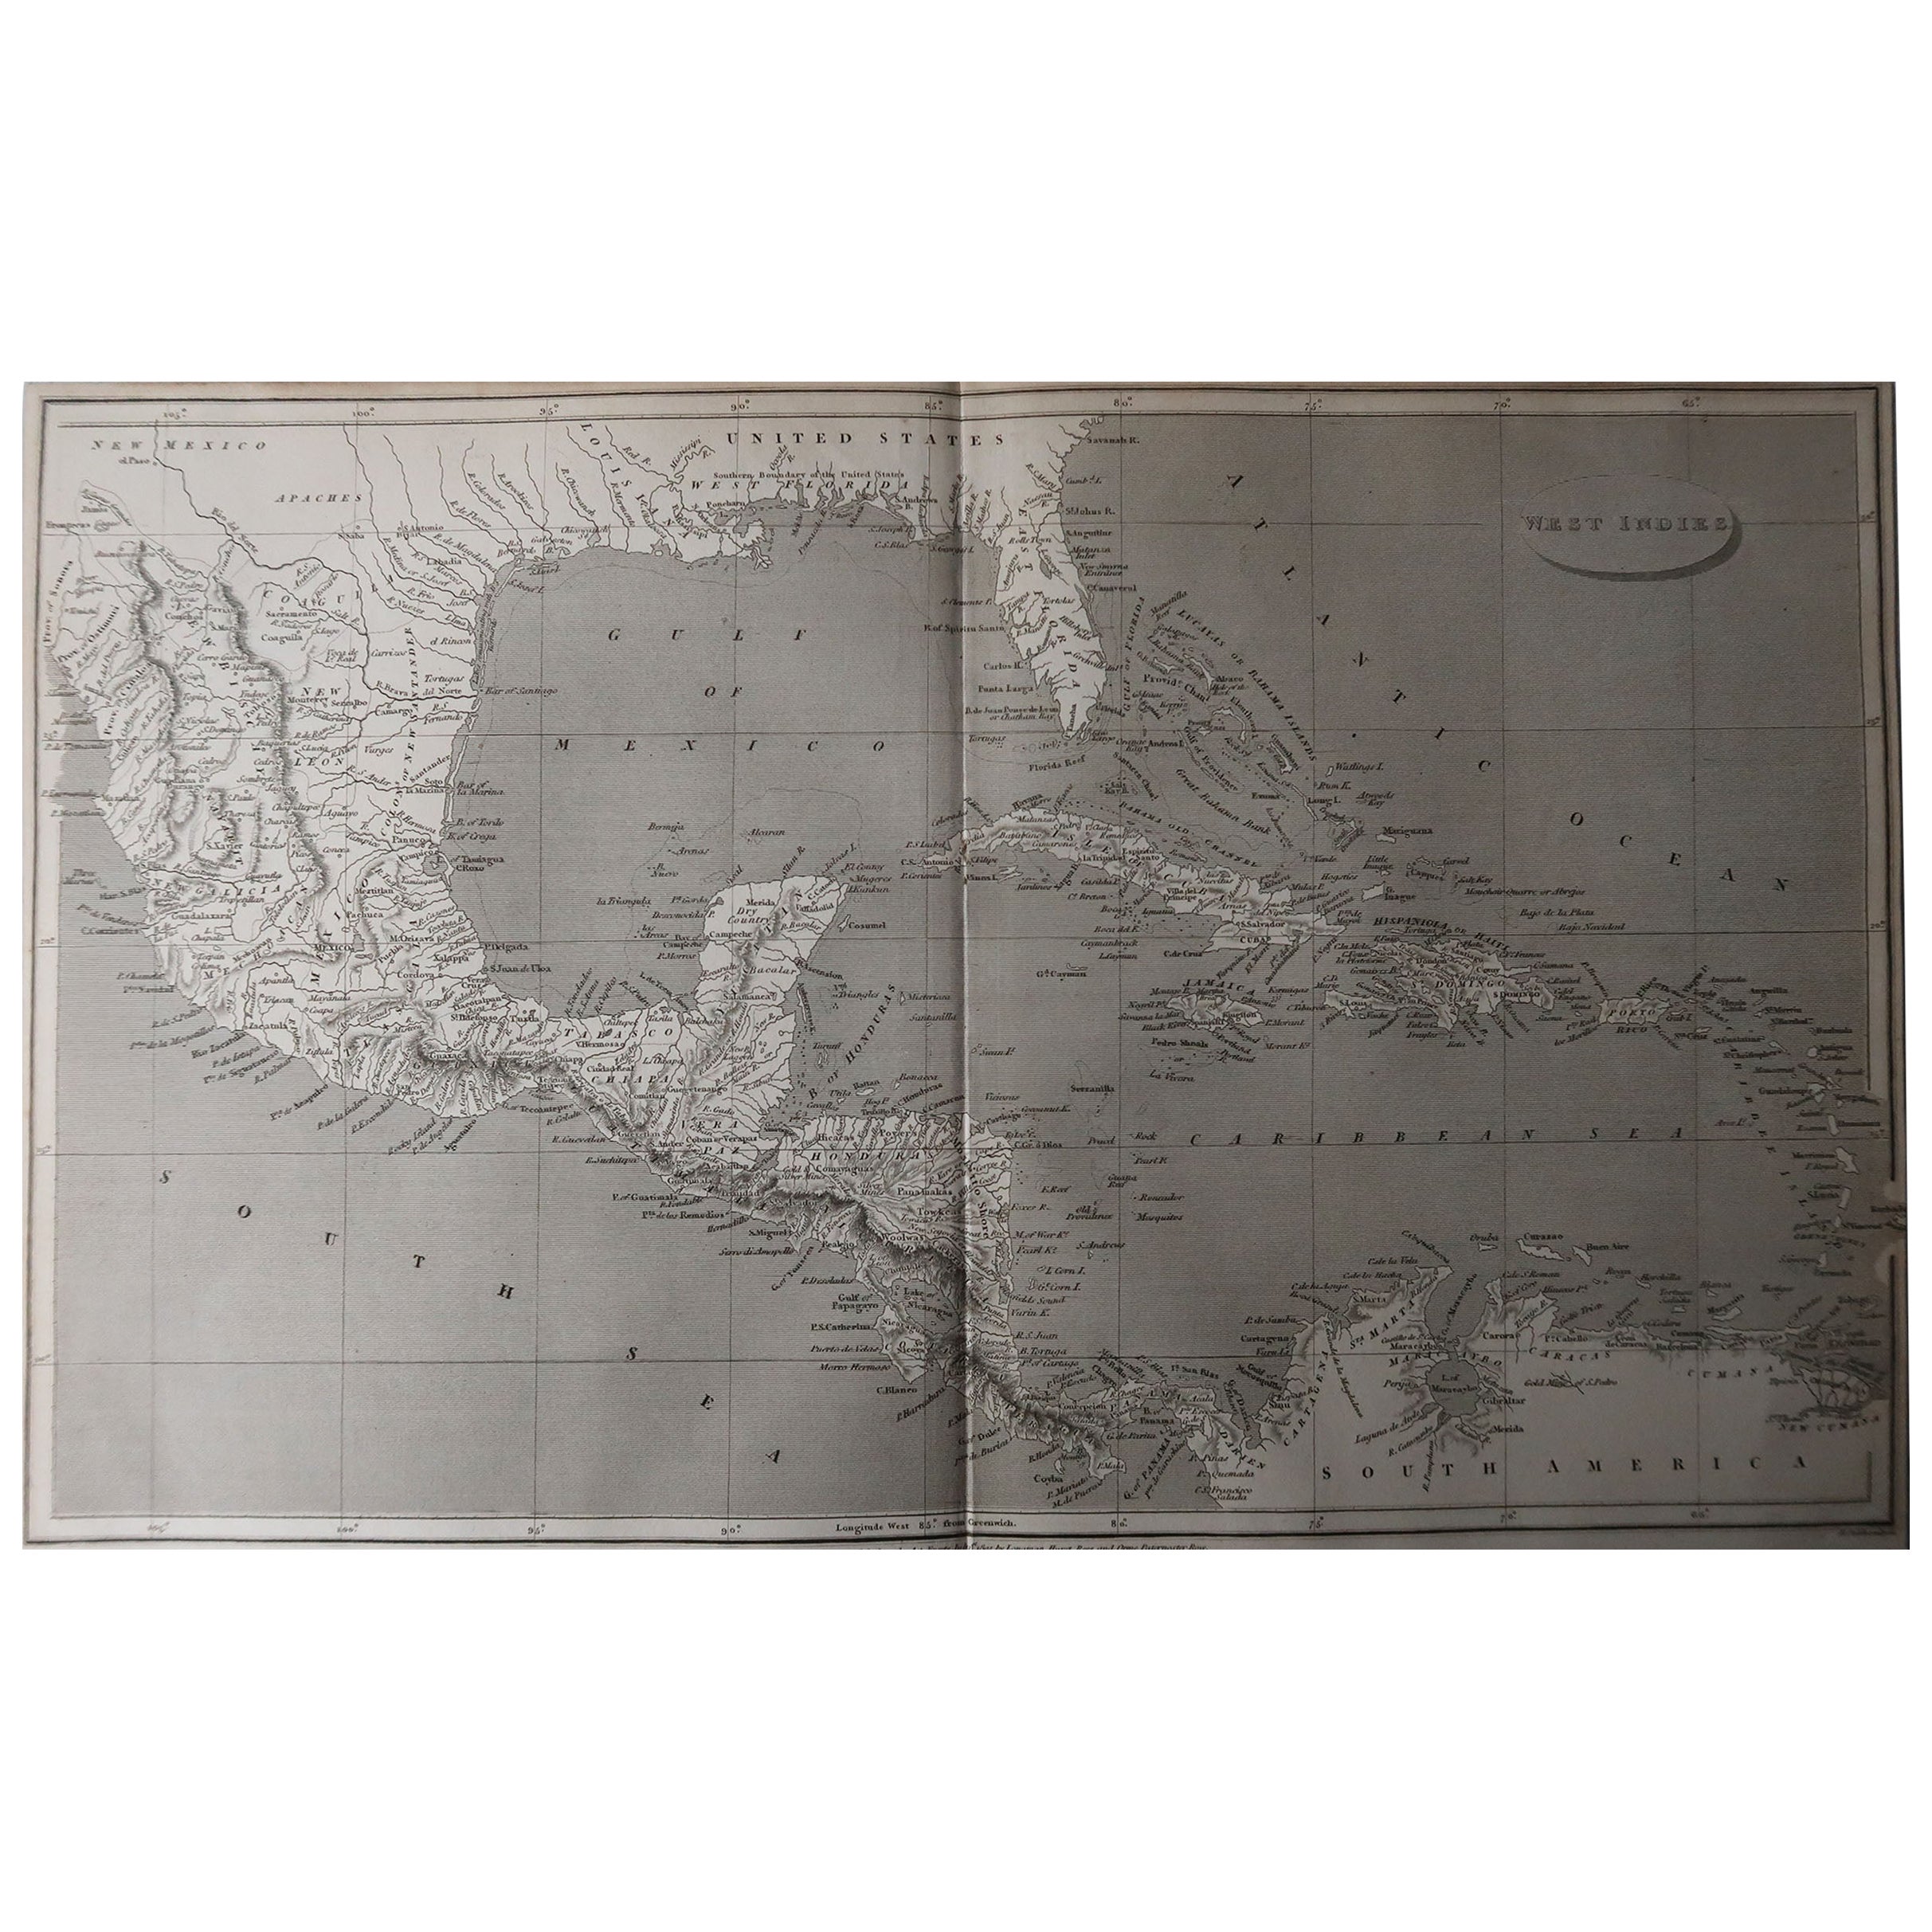 Grande carte de l'Amérique centrale.

Dessiné sous la direction d'Arrowsmith.

Gravure sur cuivre.

Publié par Longman, Hurst, Rees, Orme et Brown, 1820

Non encadré.